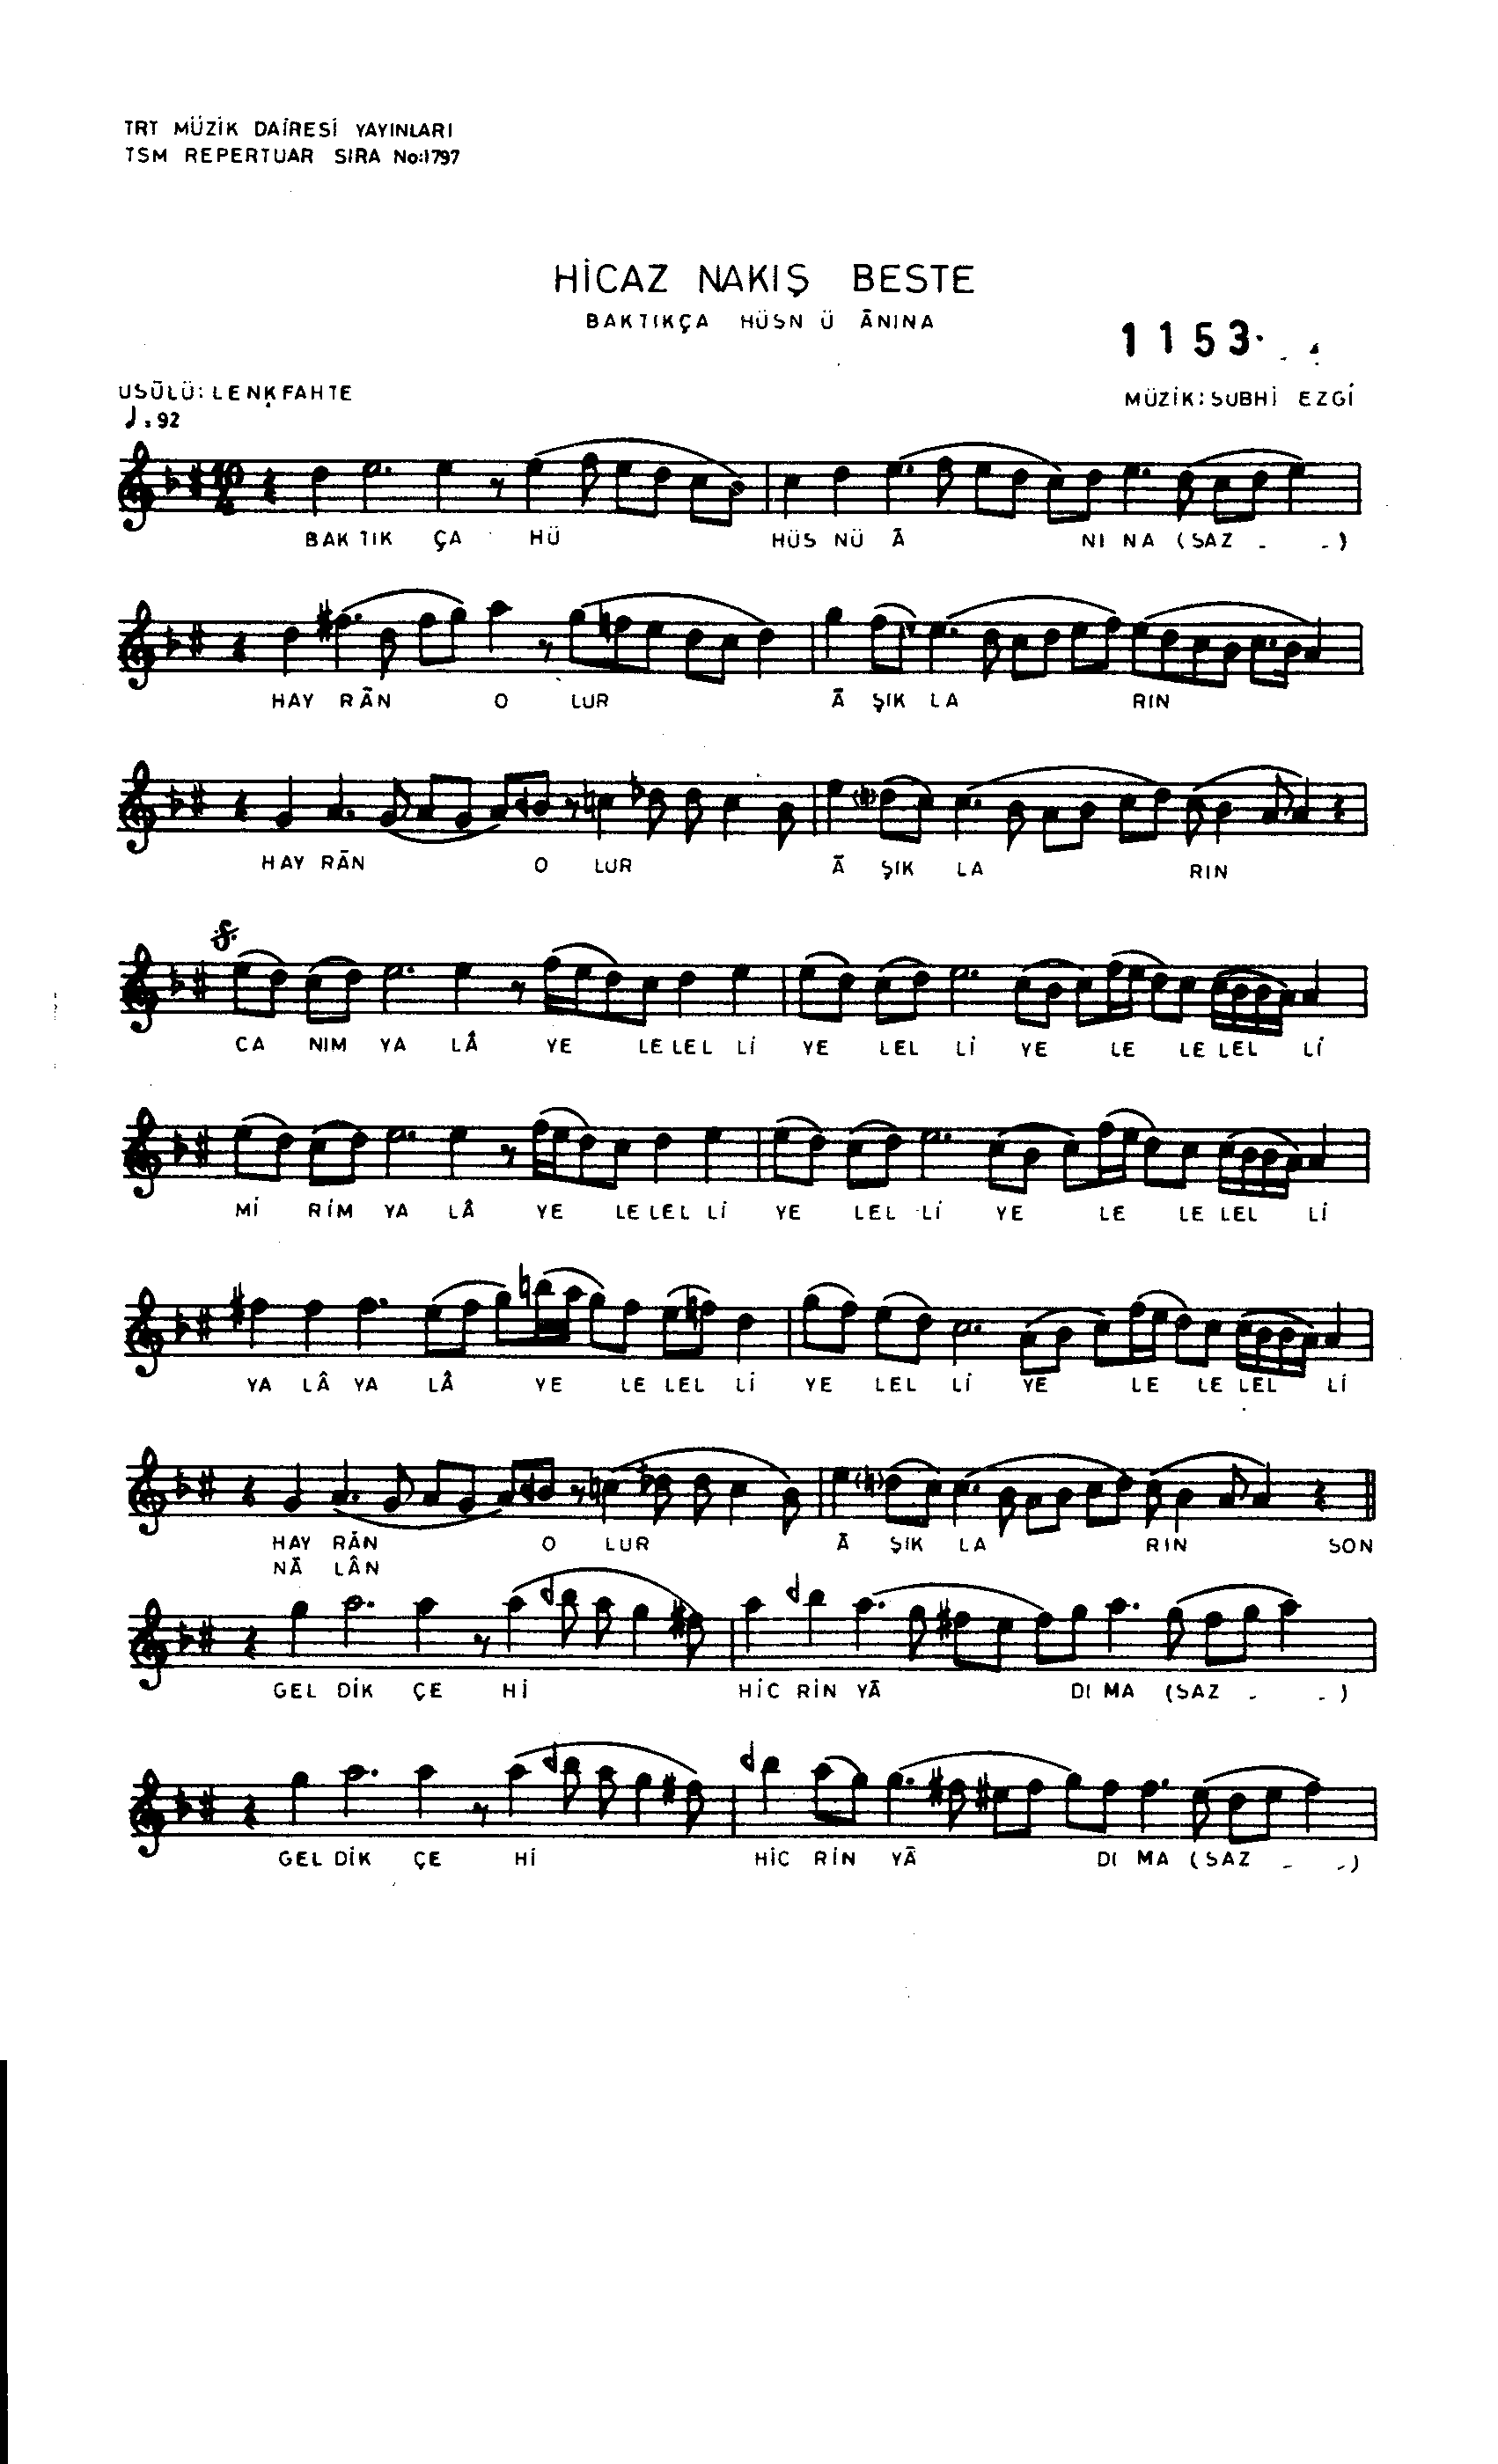 Hicâz - Beste - Suphi Ezgi - Sayfa 1